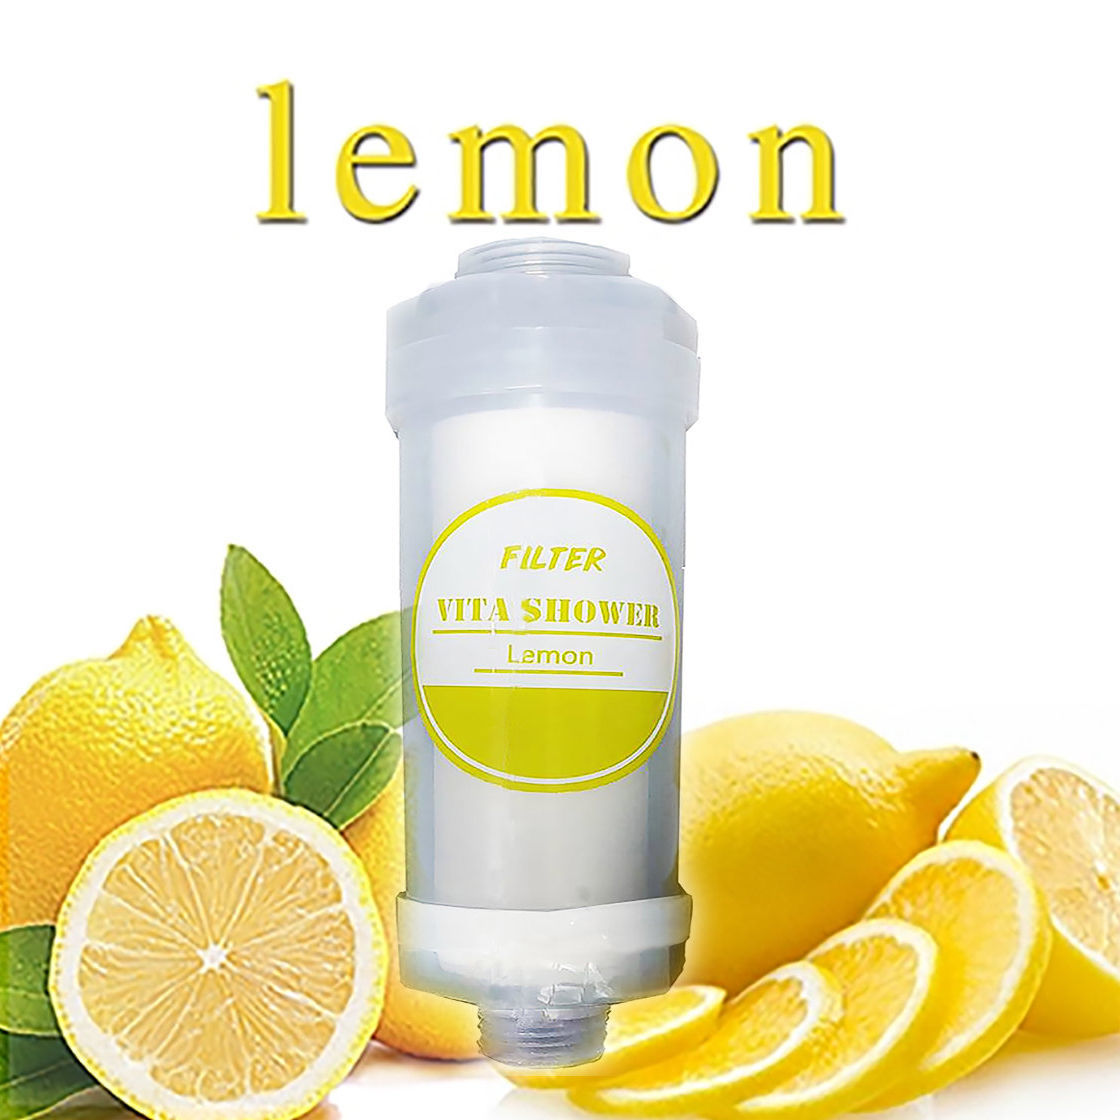 ตัวกรองอาบน้ำกลิ่น Lemon  จาก SISTEMA มีส่วนผสมของวิตามิน  ช่วยเพิ่มความชุ่มชื้นให้แก่ผิว พร้อมช่วยลดปริมาณคลอรีนในน้ำ ให้กลิ่นหอมสดชื่นระหว่างอาบน้ำ สามารถใช้ได้กับเครื่องทำน้ำอุ่นและฝักบัวปกติ 